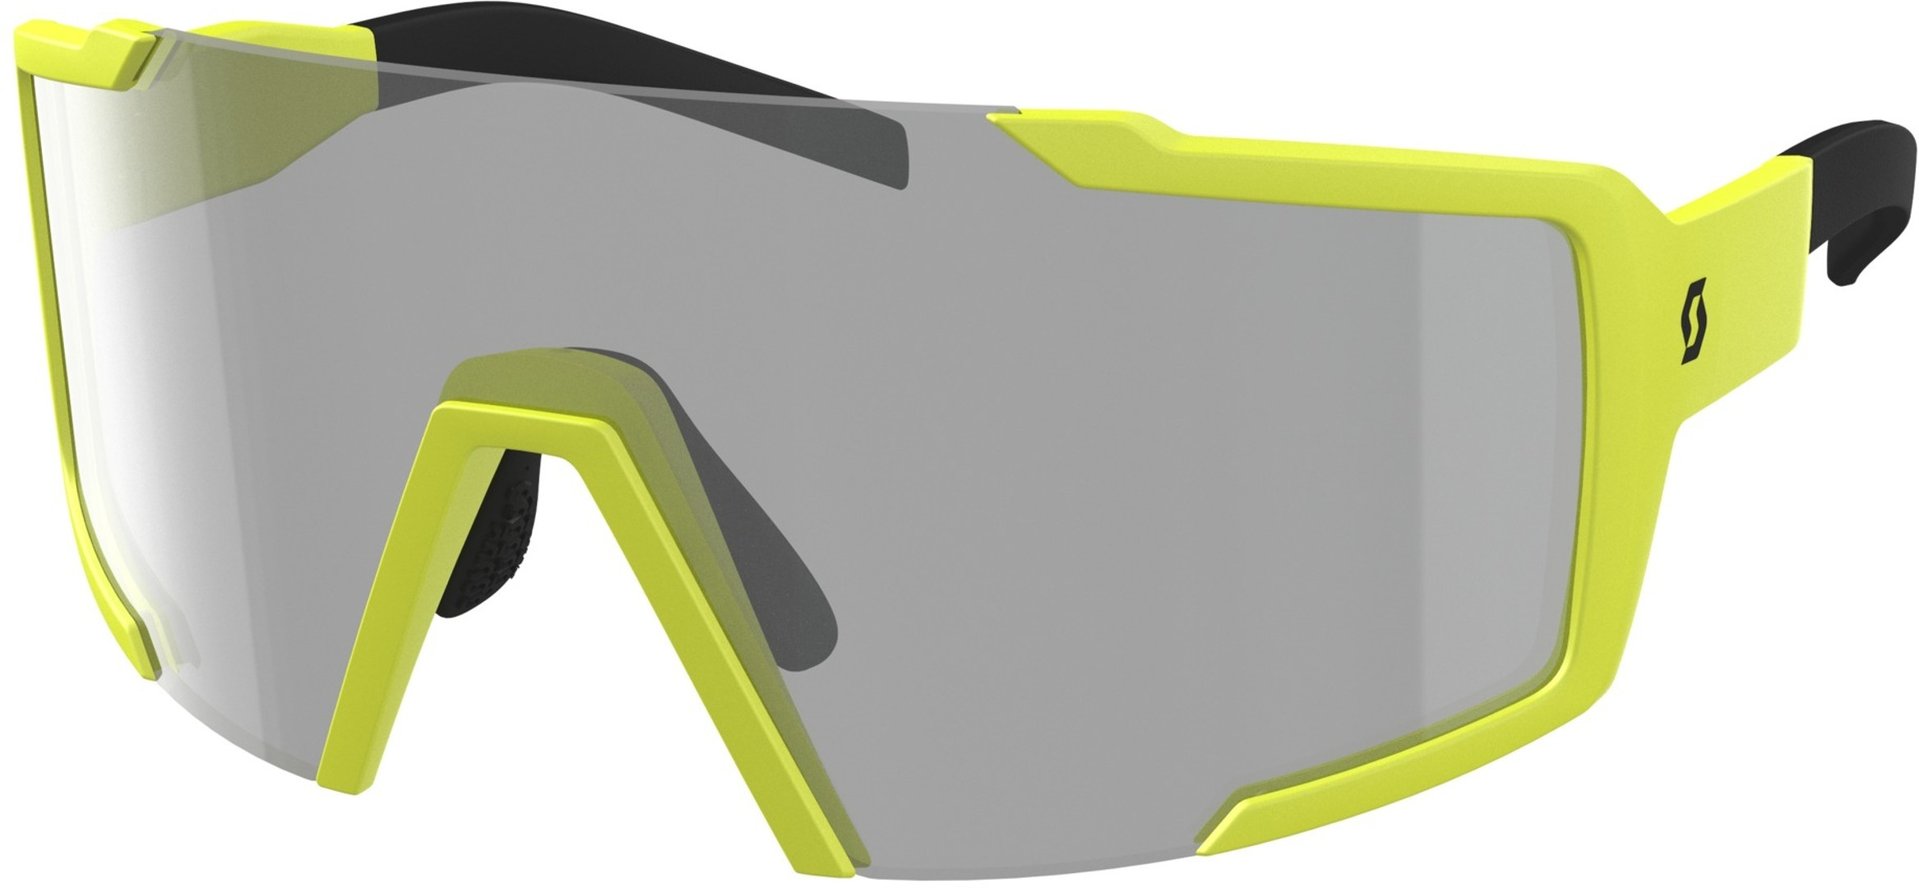 Солнцезащитные очки Scott Shield LS с регулируемой носовой накладкой, желтый/серый солнцезащитные очки серый экрю